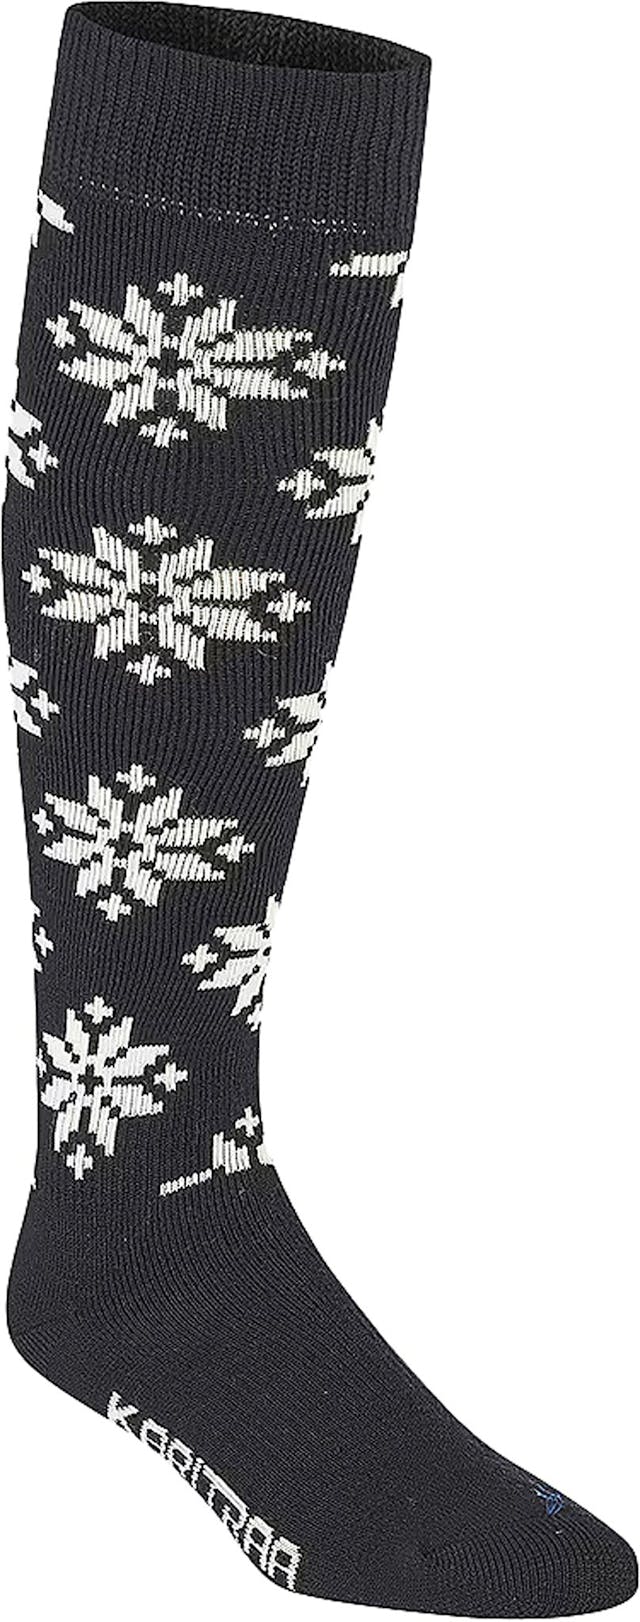 Product image for Rose Wool Ski Socks - Women's